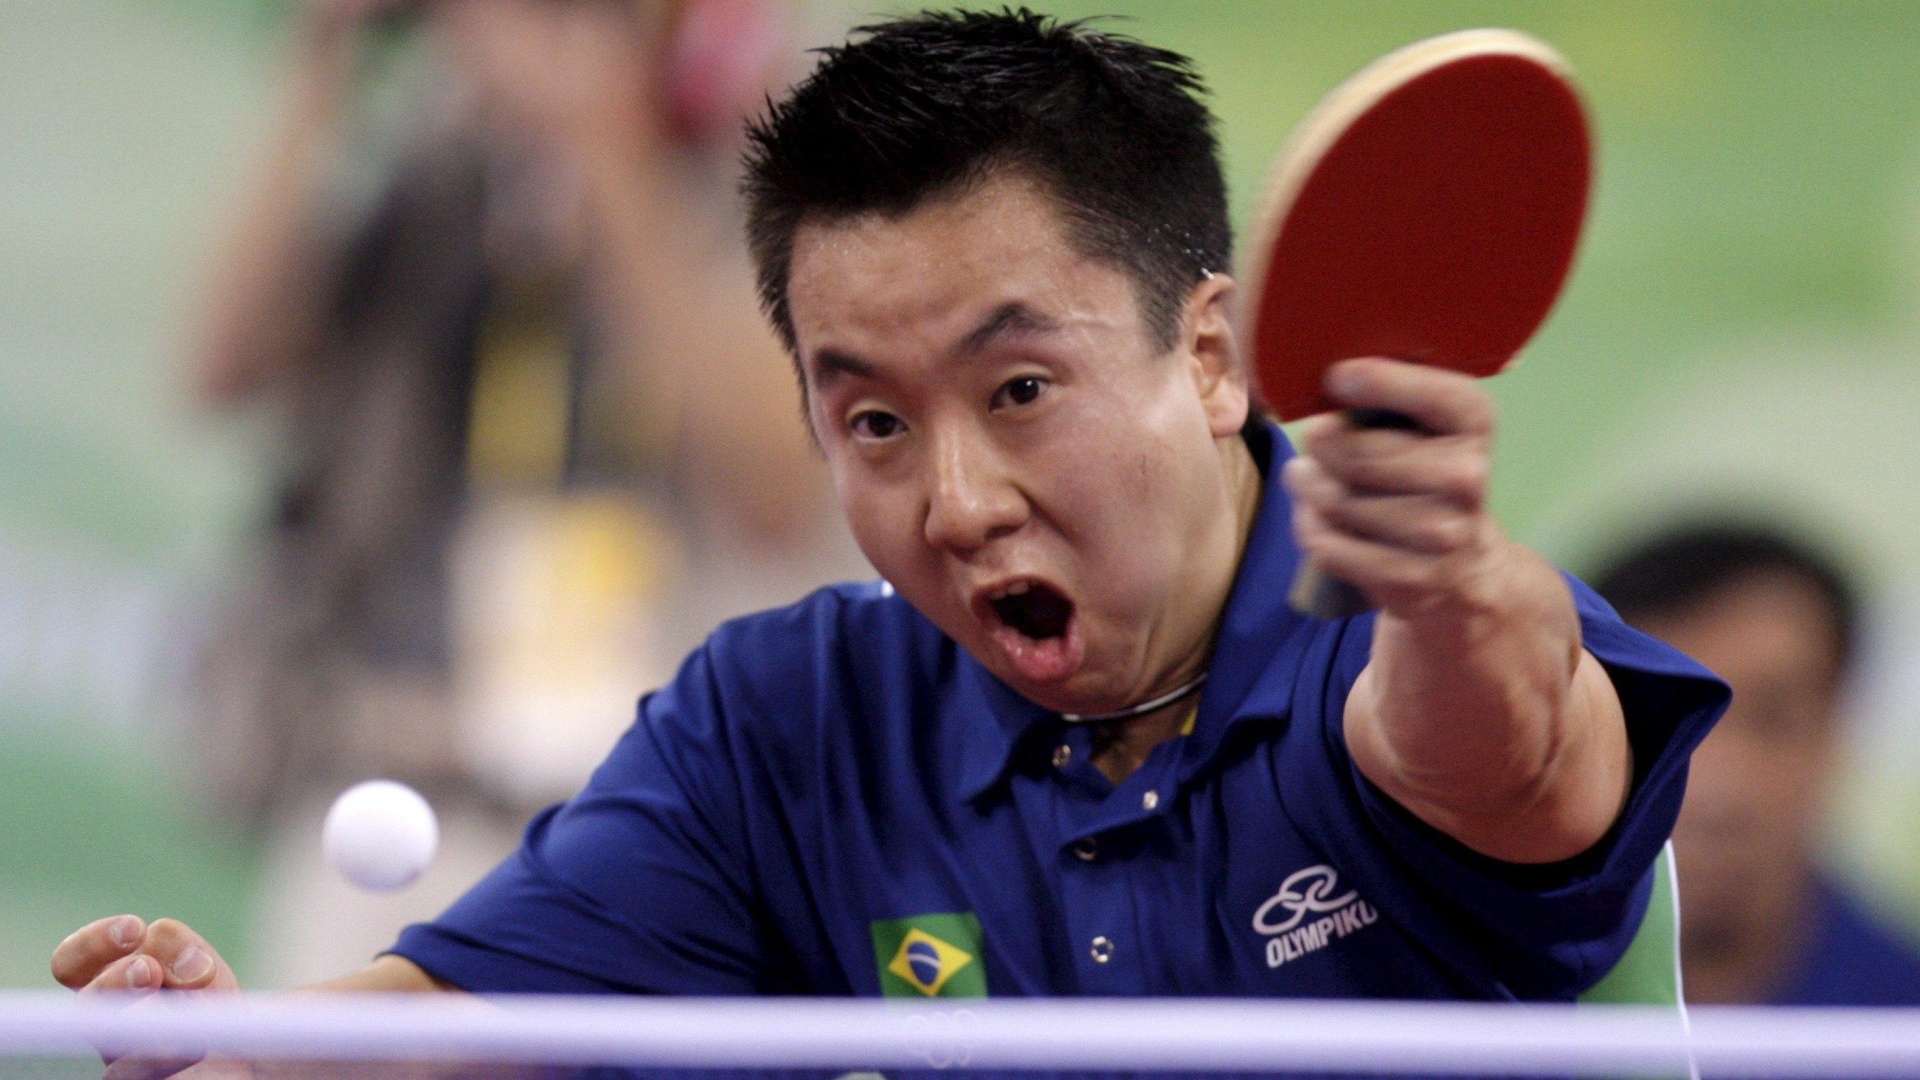 O mesa-tenista Gustavo Tsuboi rebate a bolinha em jogo na Olimpíada de Pequim